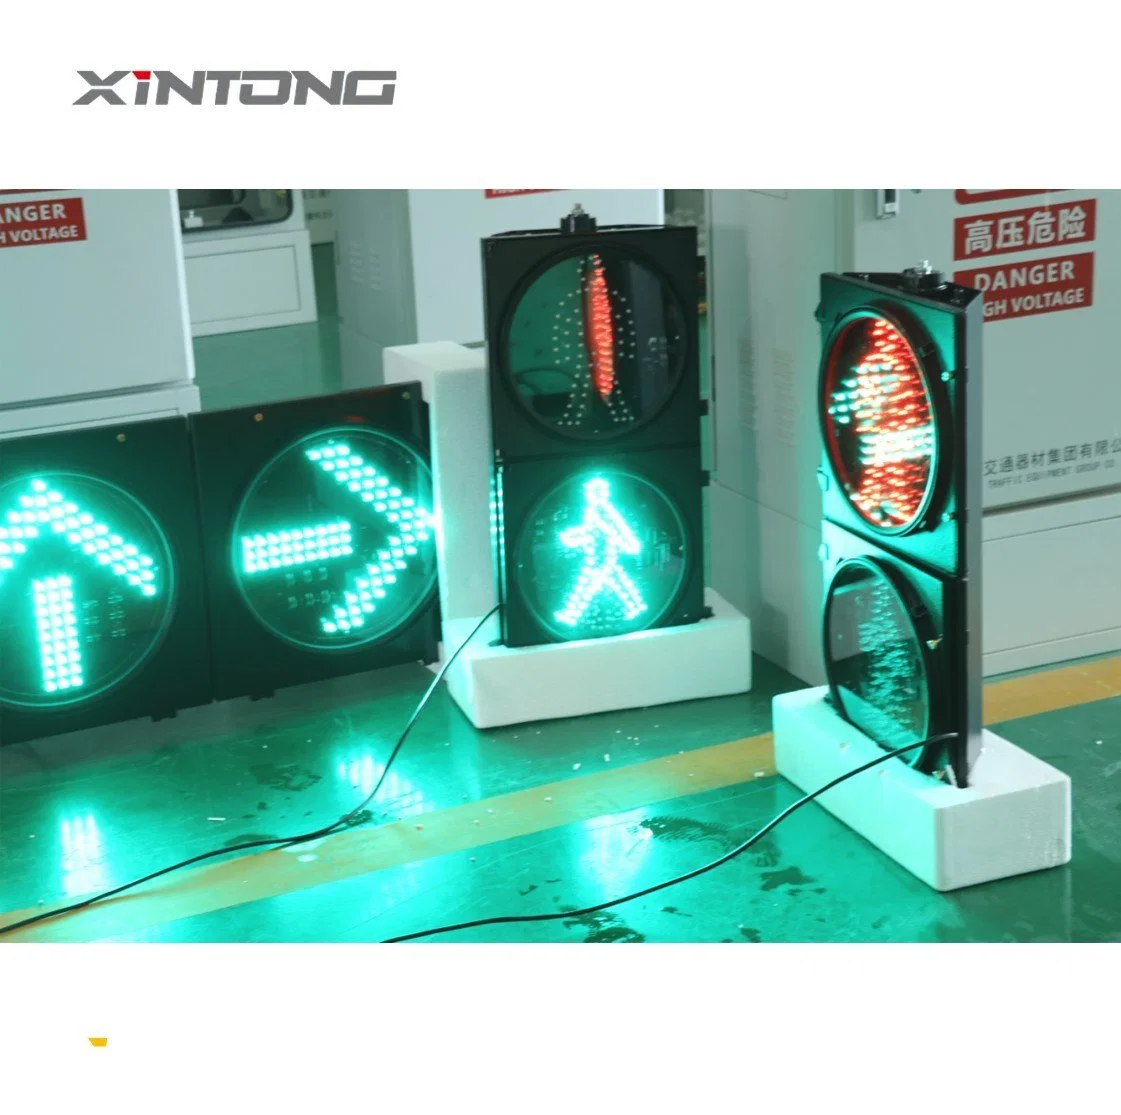 Должна превышать 50000 часов пешеходный переход Xintong 200мм предупреждение трафик лампы сигнала поворота